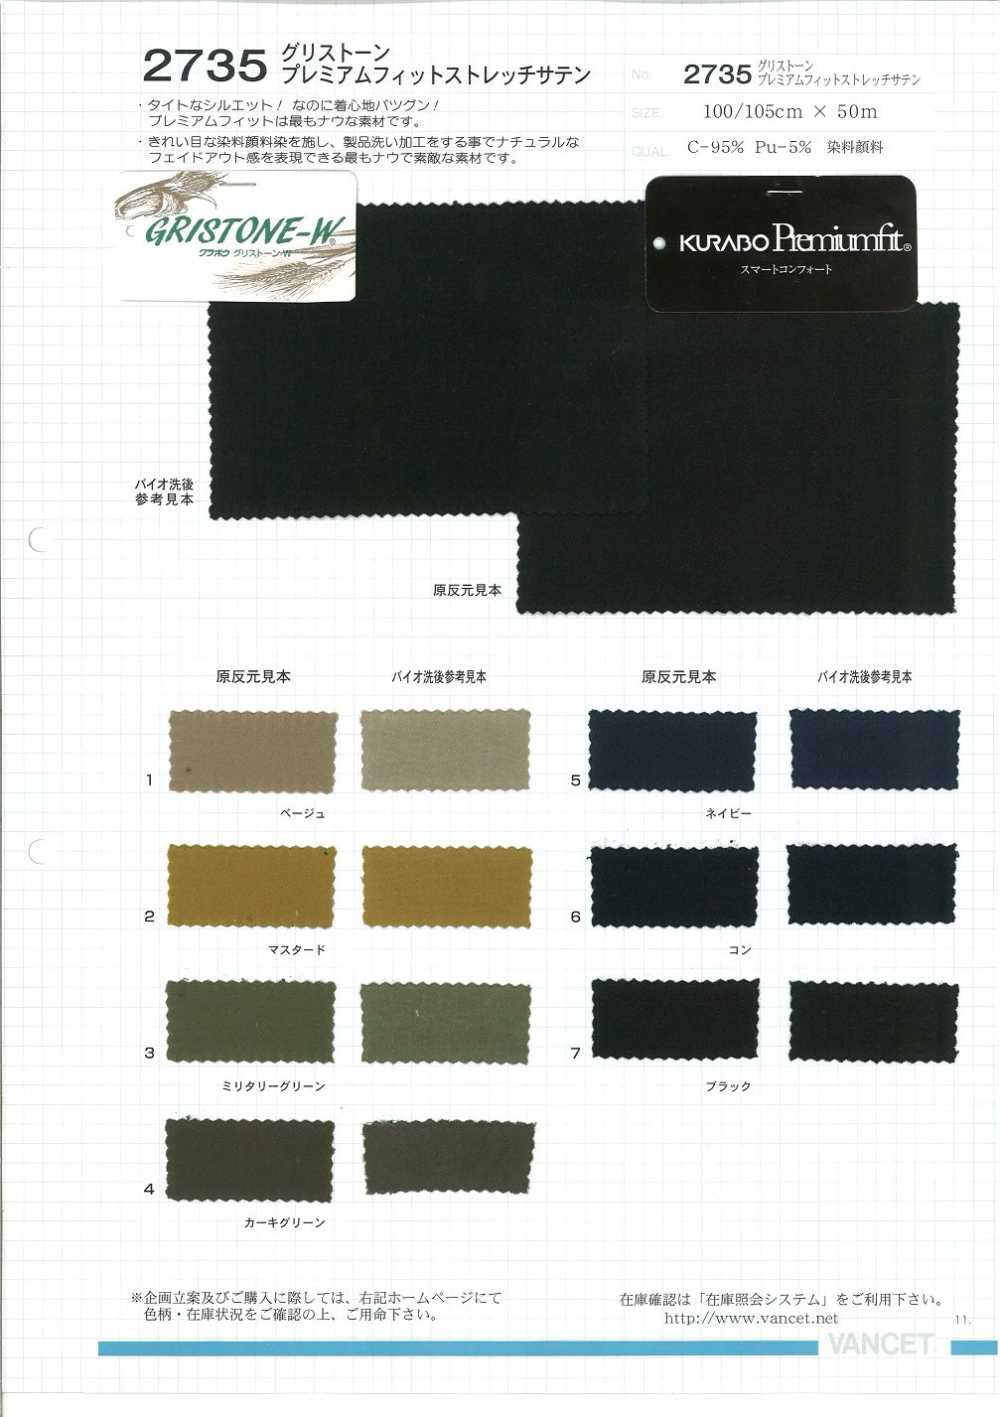 2735 Satén Elástico Grisstone Premium Fit[Fabrica Textil] VANCET